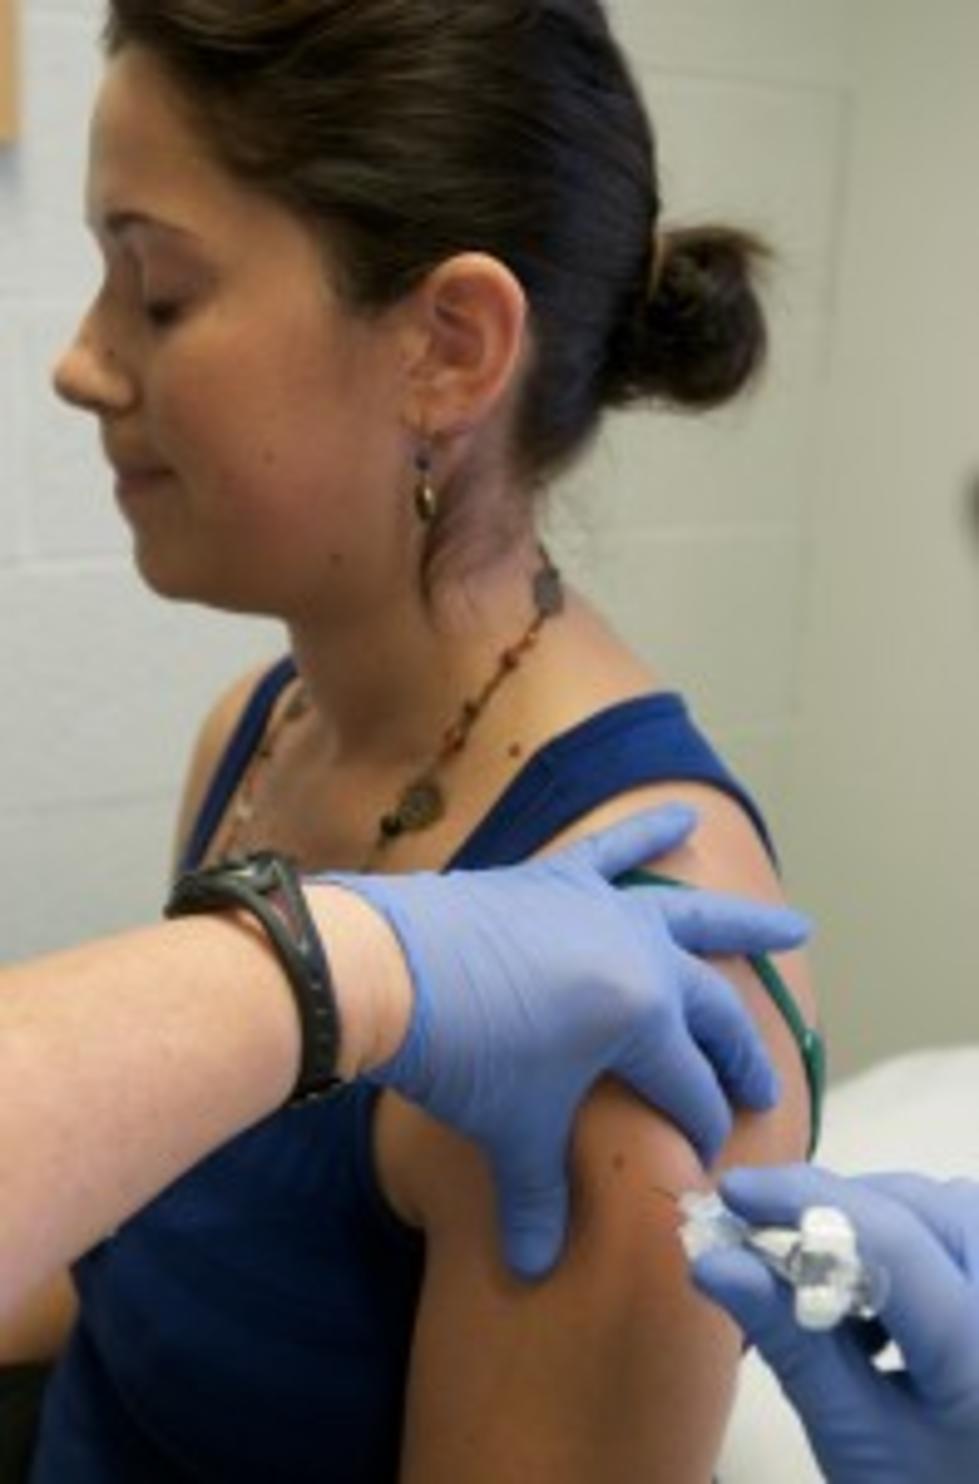 MN Sees Season&#8217;s First Pediatric Flu Death